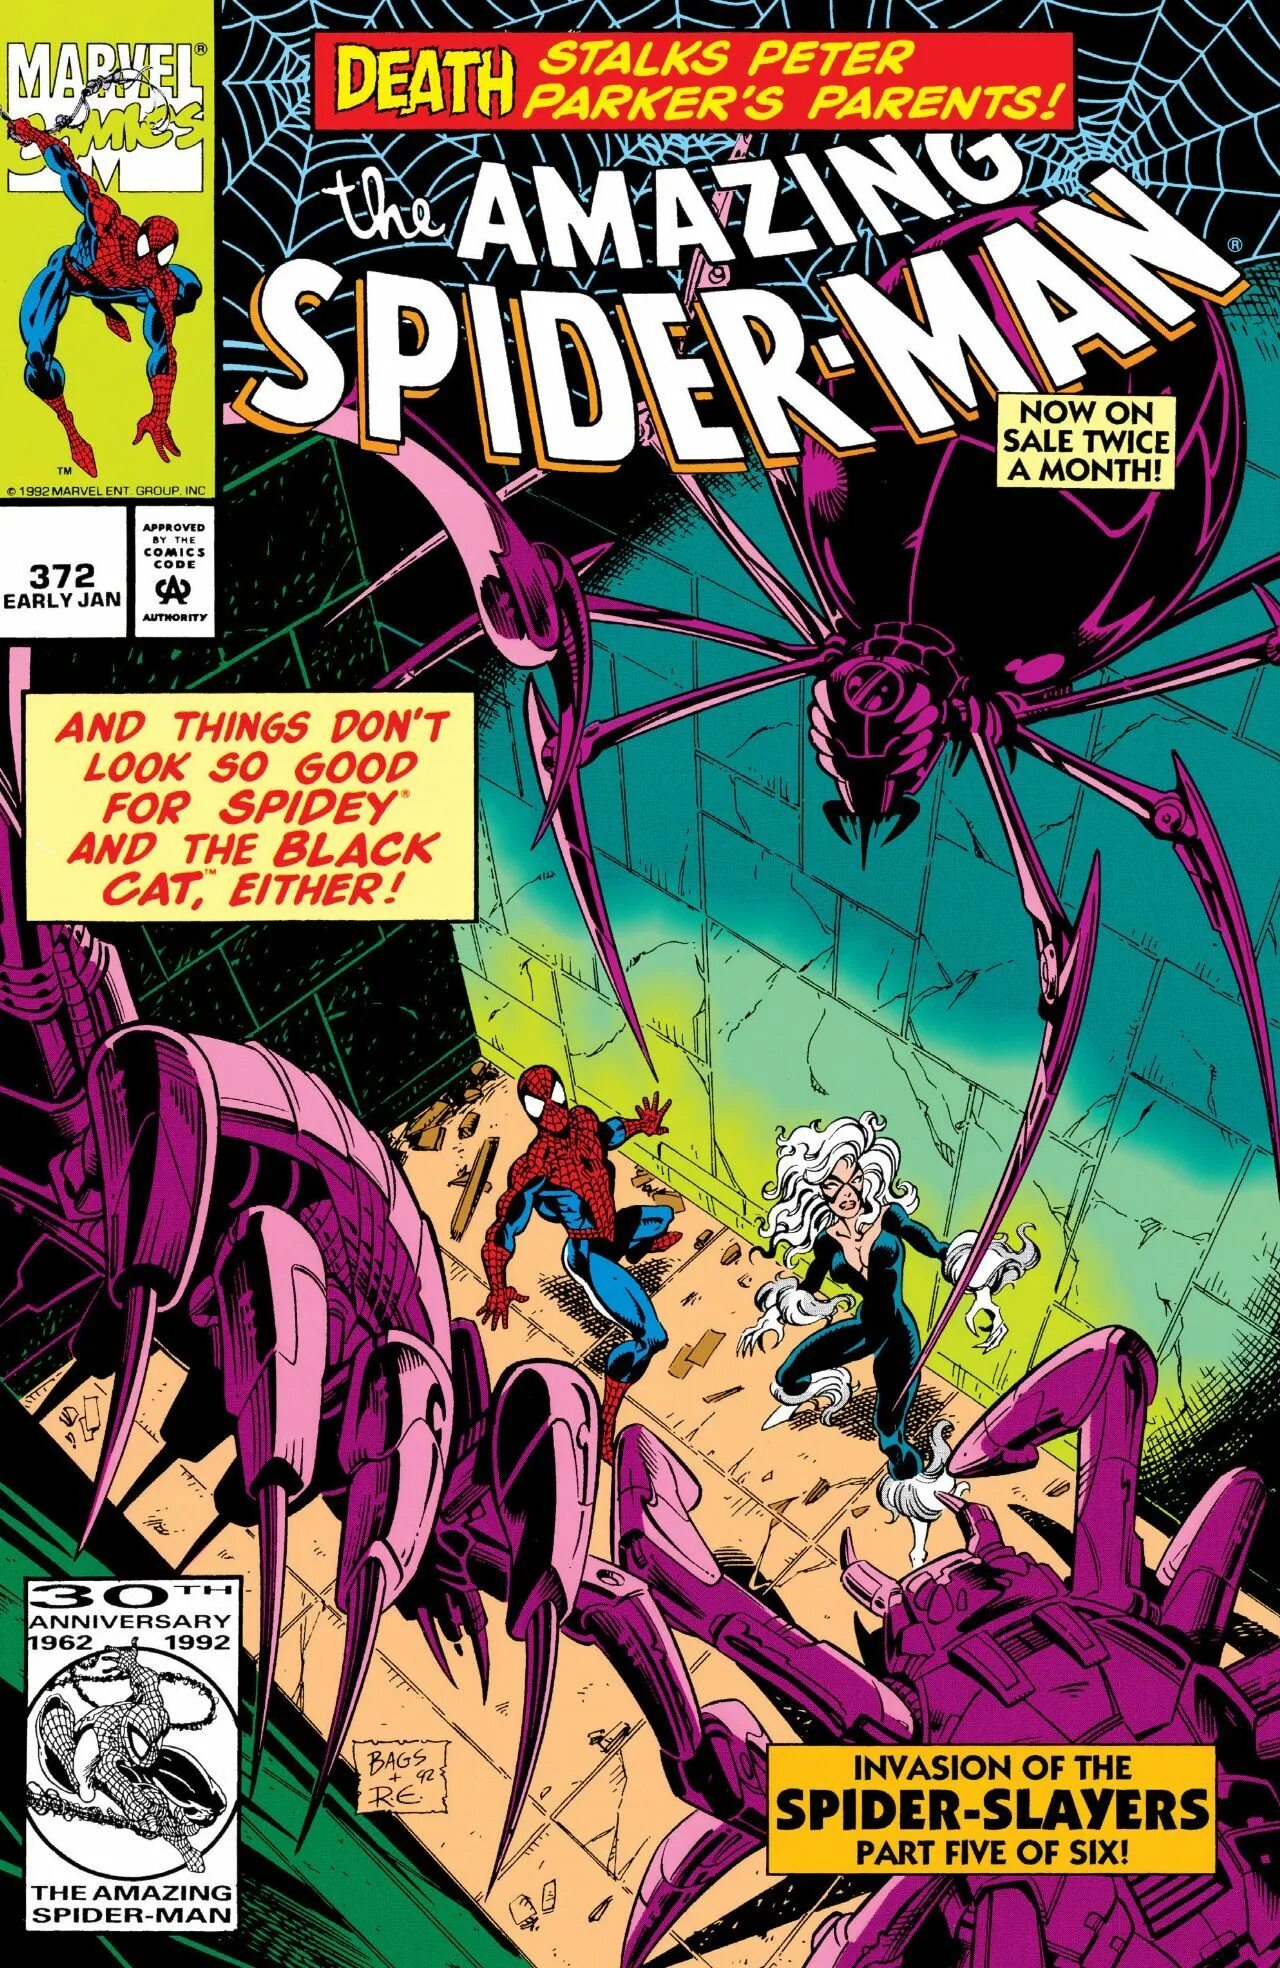 Spider Slayers Marvel. Spider-man 3: Invasion of Spider-Slayers. The amazing Spider-man #372. Удивительный человек паук комикс. Читать комиксы удивительный